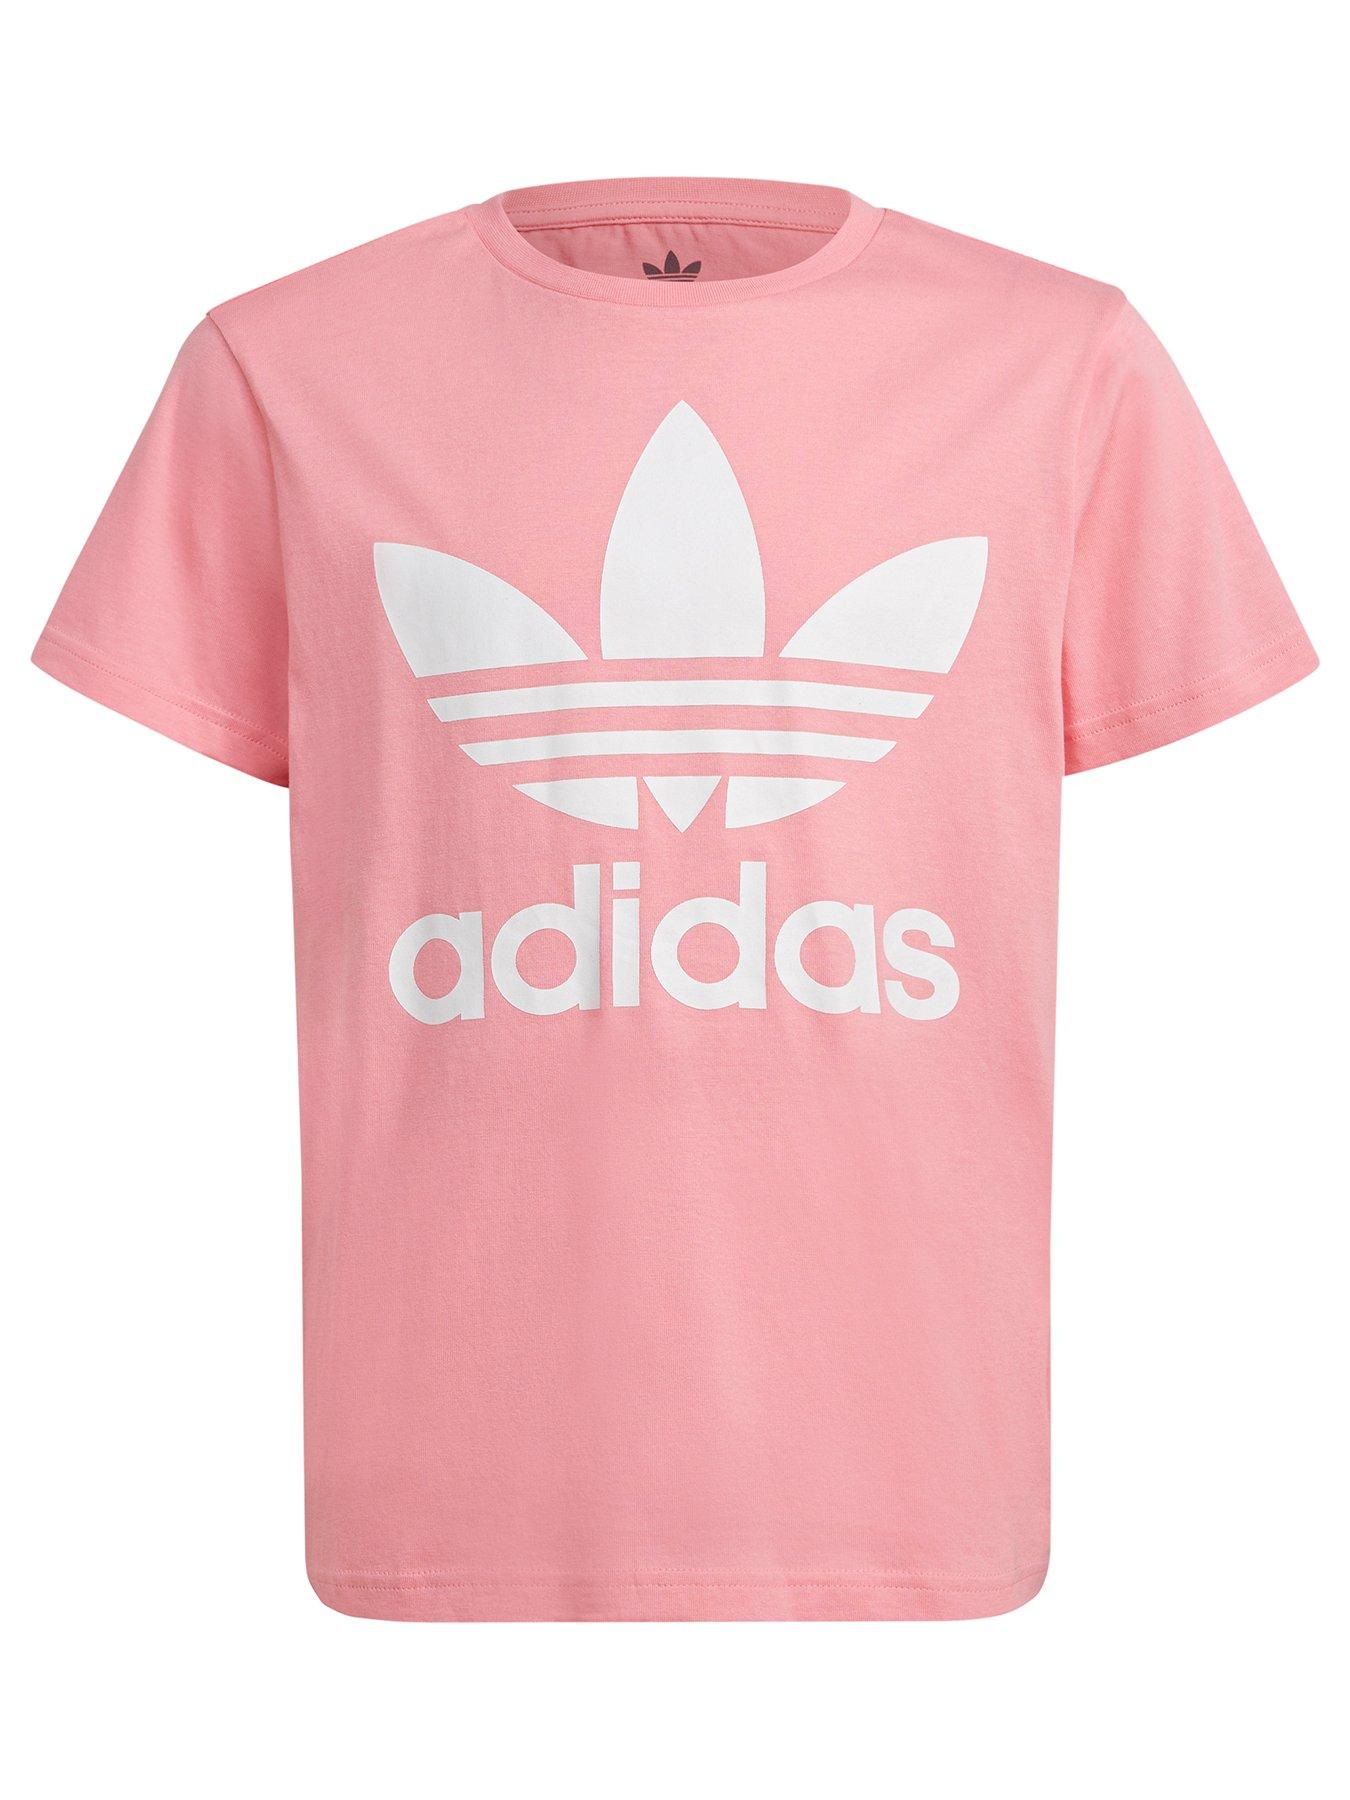 adidas Originals Junior Girls Adicolor Trefoil T-Shirt - Light Pink ...